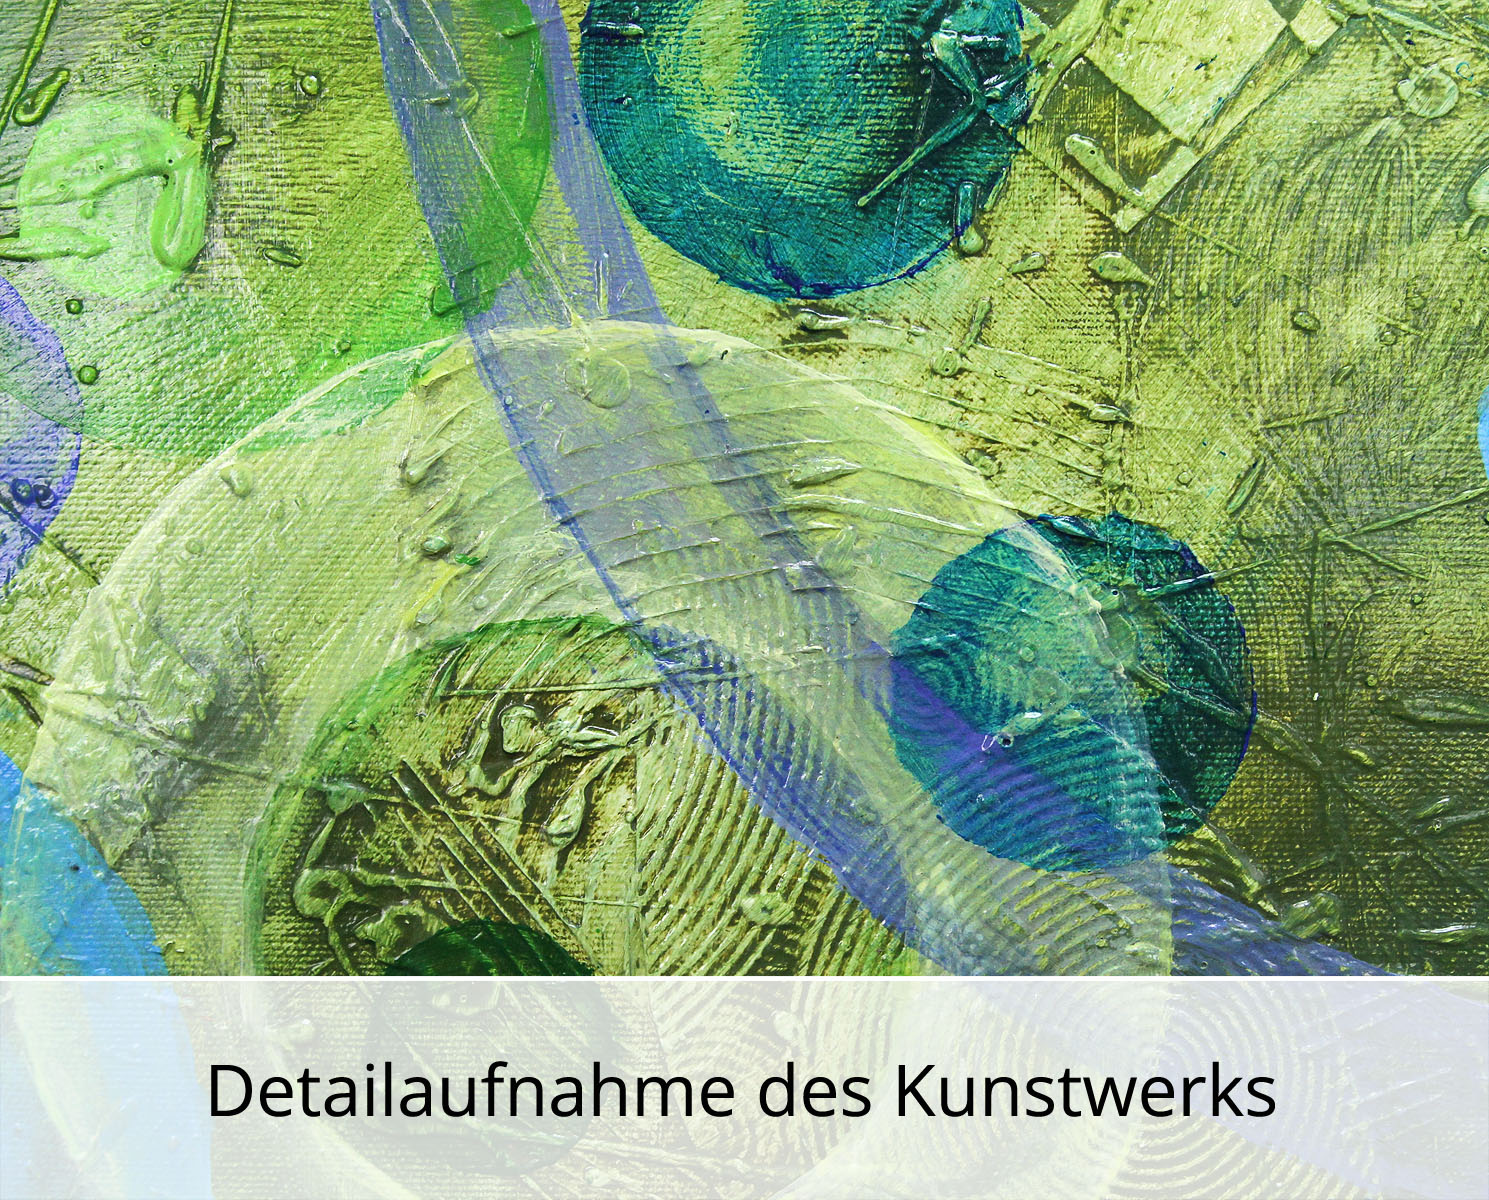 Abstrakte Malerei von Ewa Martens: "Zeitfenster- Ab ins Grüne", Original/Unikat